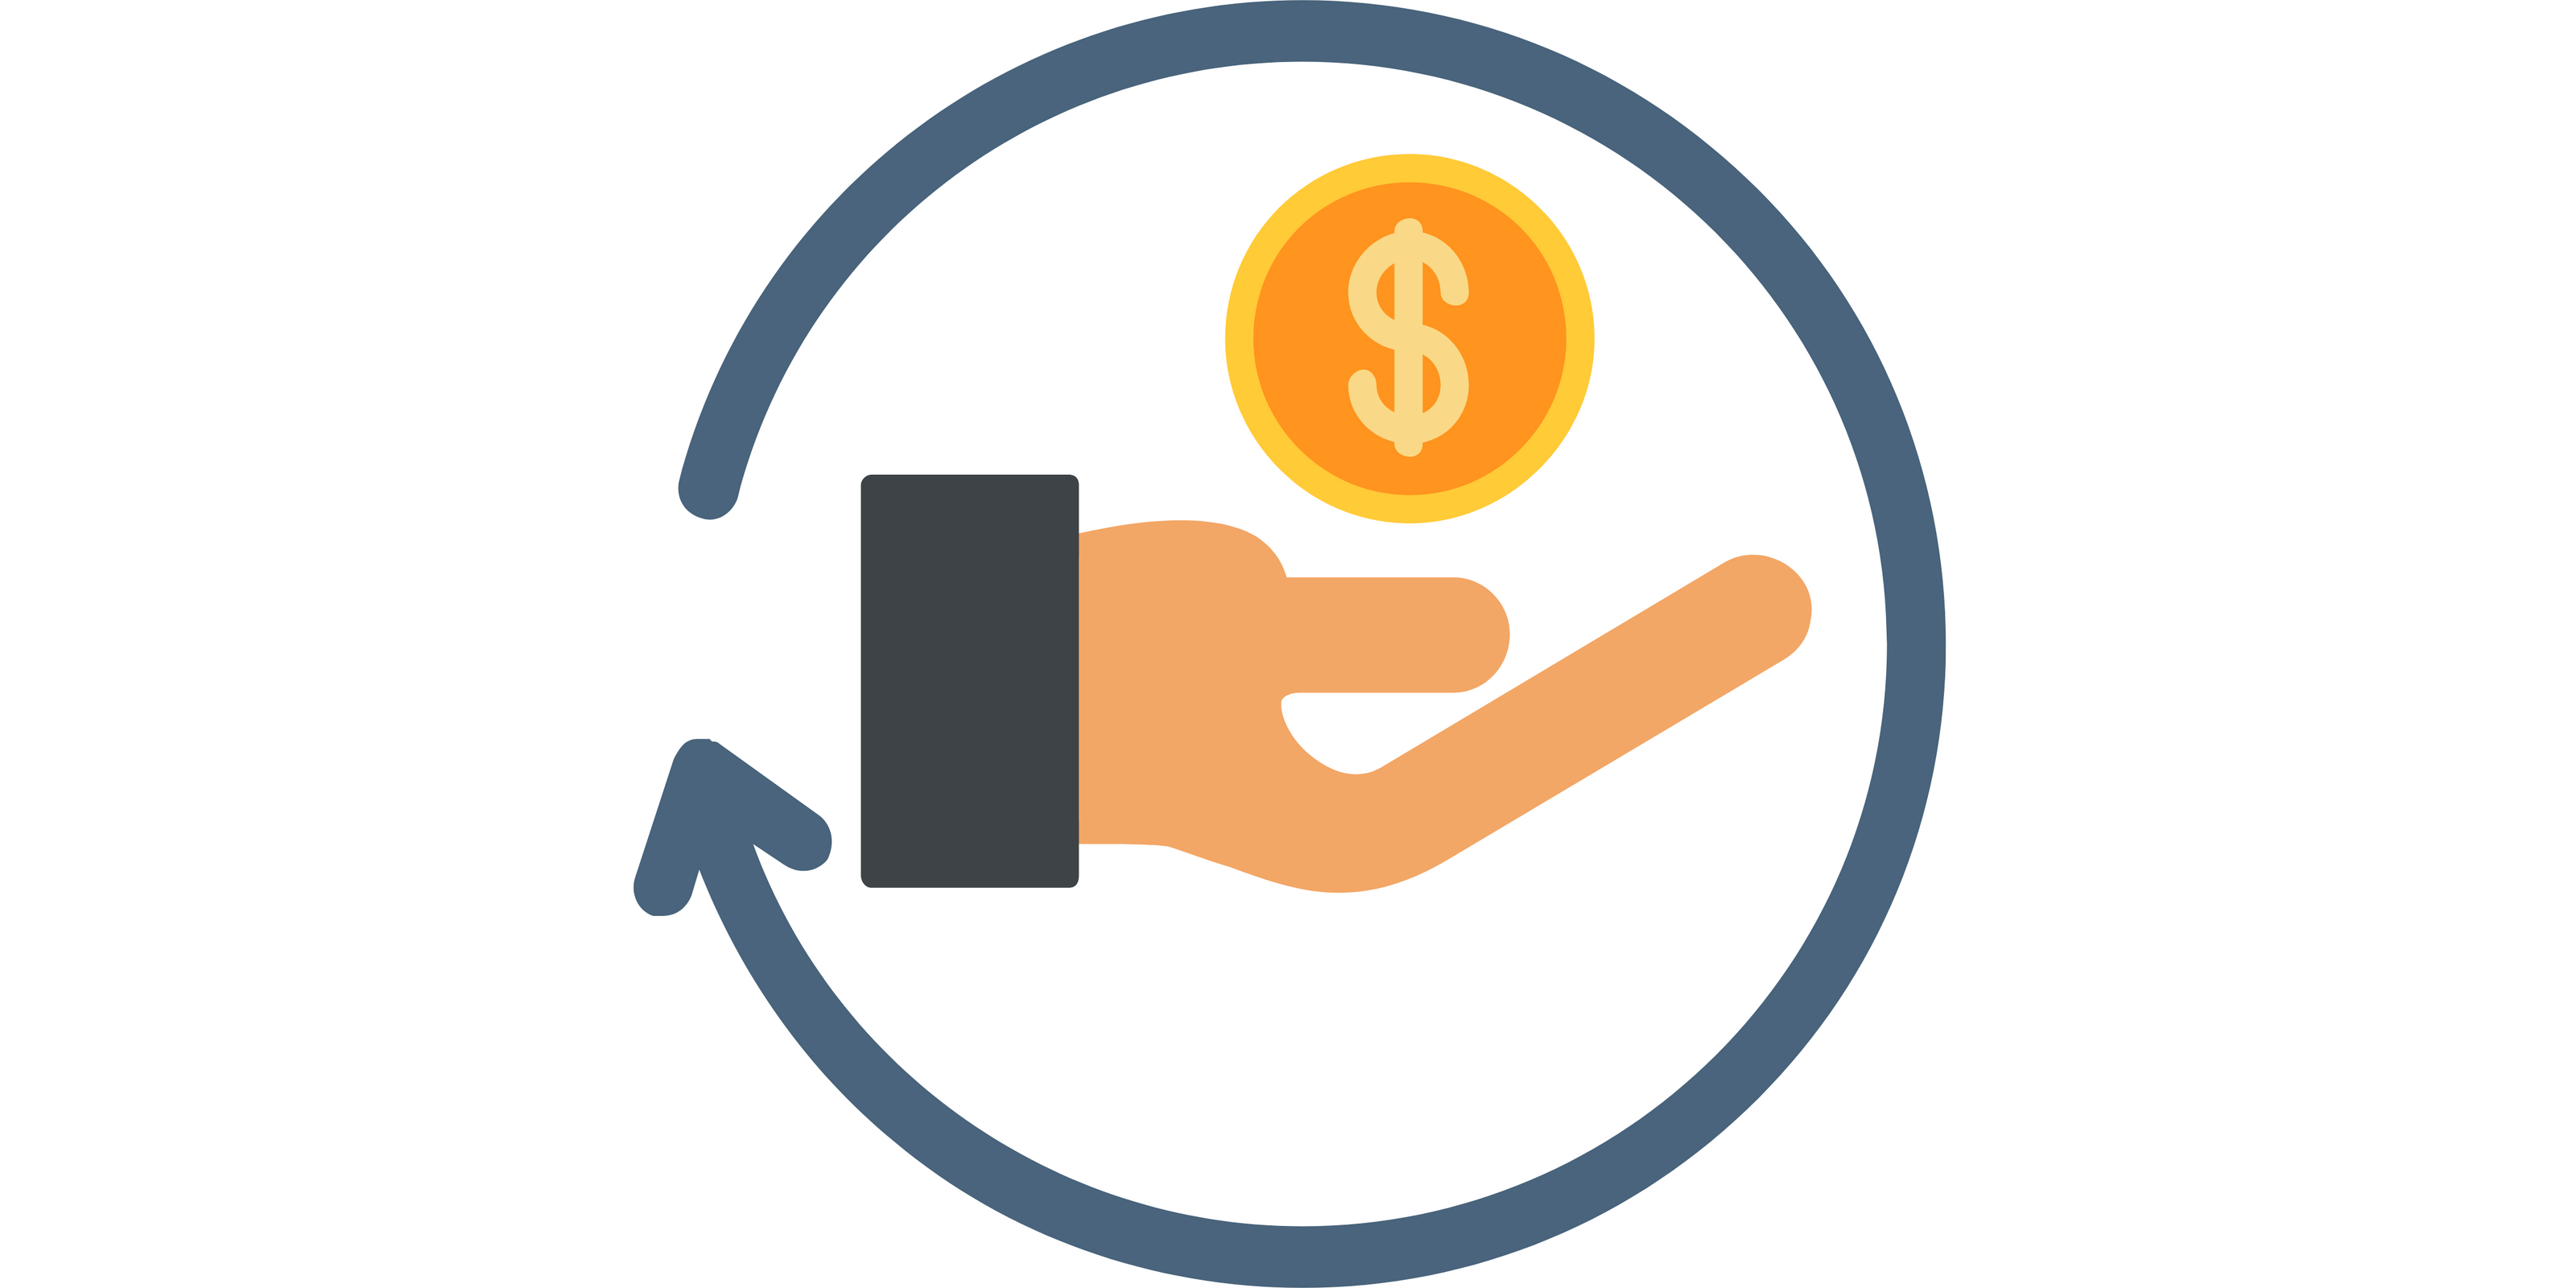 PNG sous forme d'icone qui montre une main qui position de réception de monnaie et une flèche qui entoure la main à 360 degrés, Indiquant la possibilité d'un remboursement garantie 